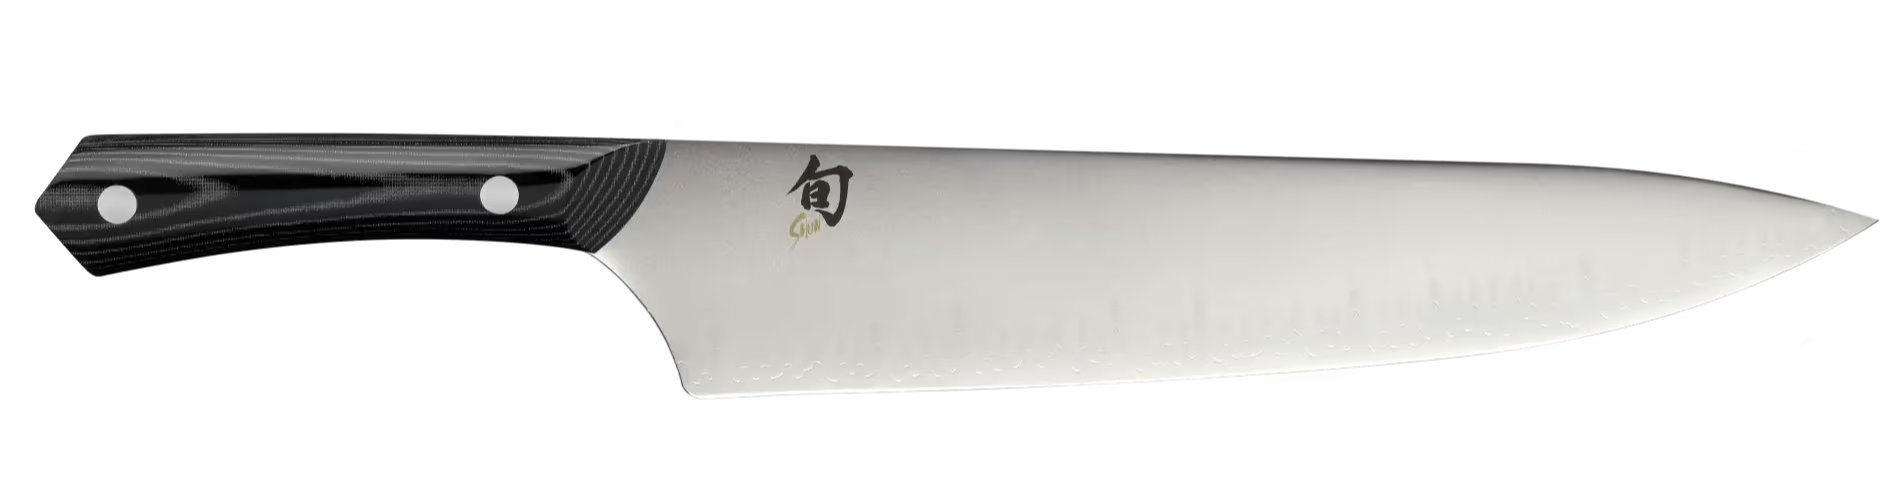 Shun Narukami Chef Knife